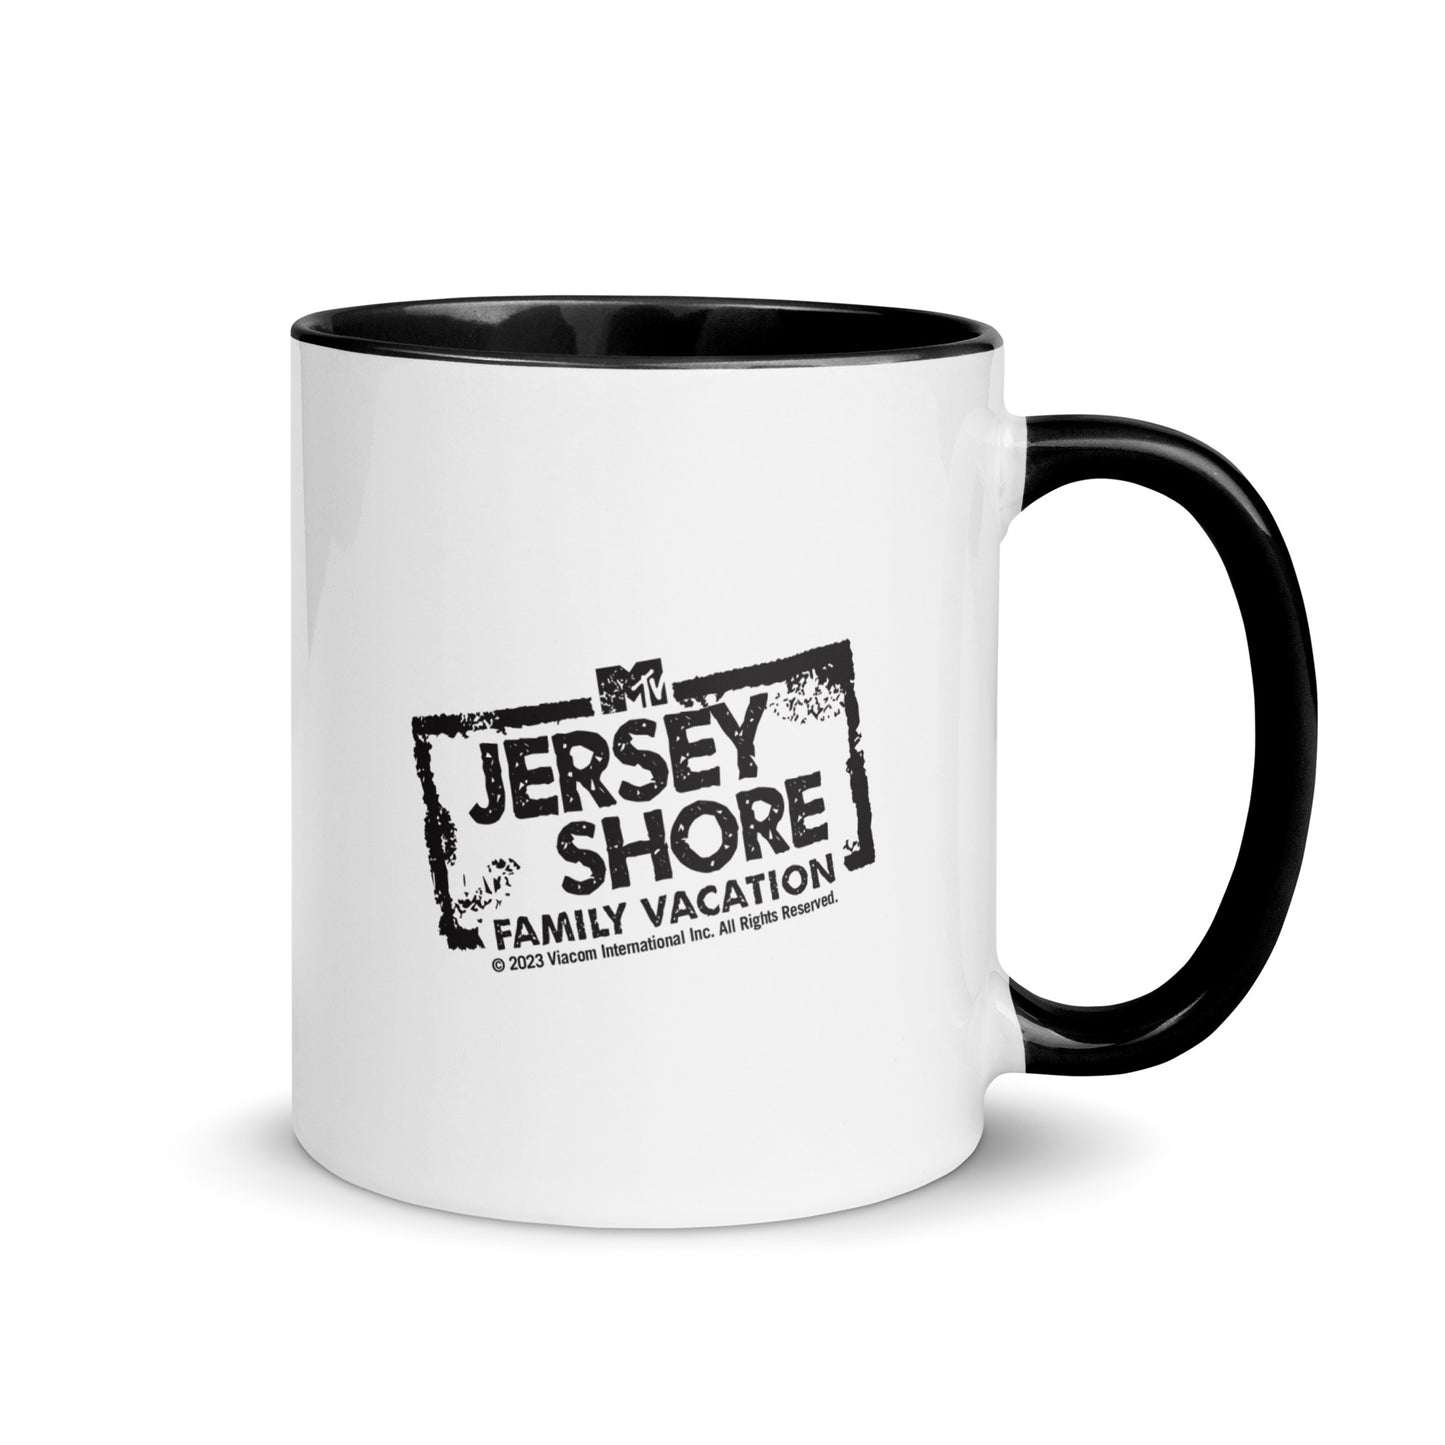 Jersey Shore Family Vacation Mug pour le dîner du dimanche